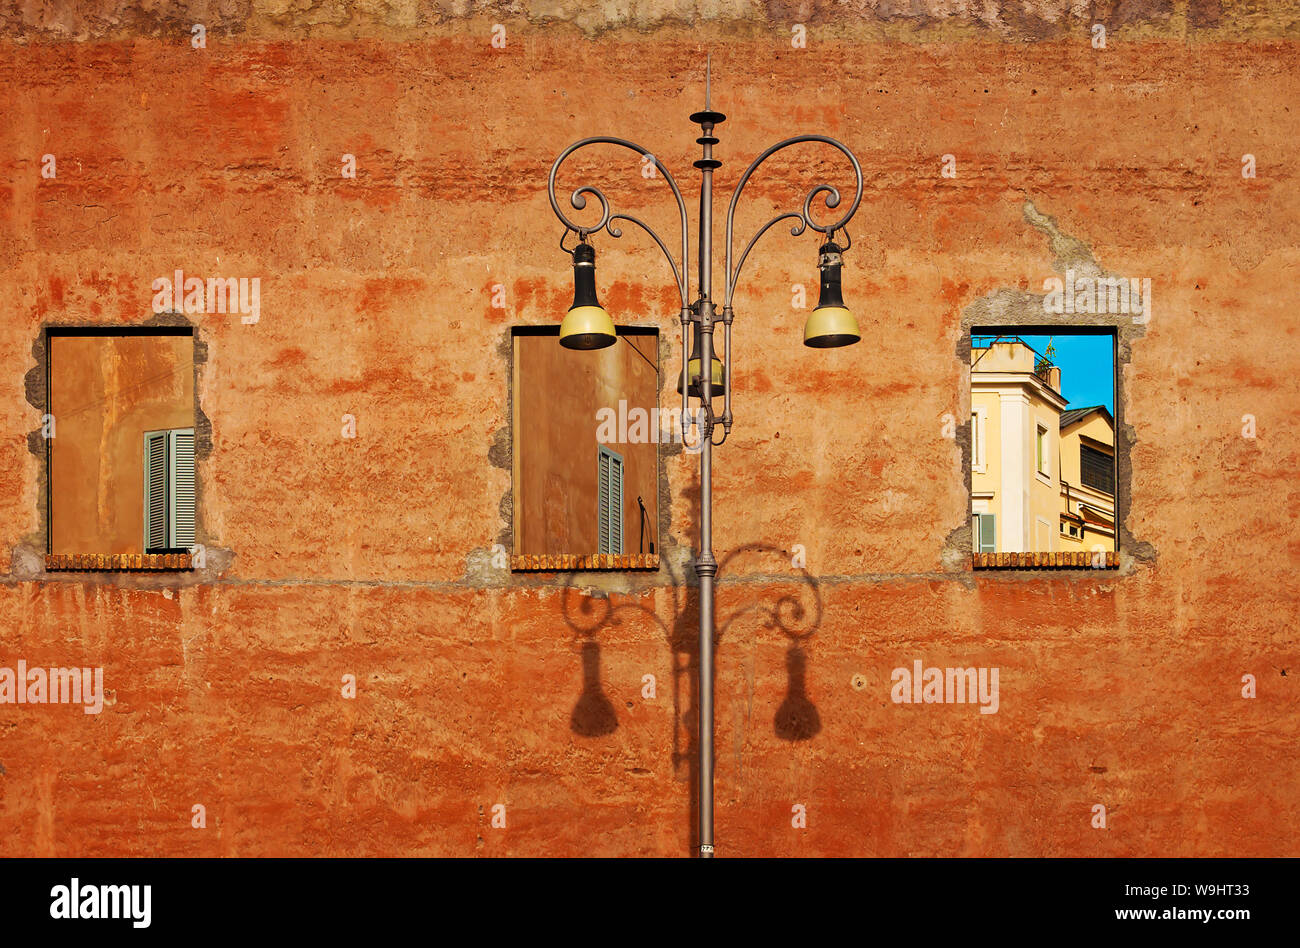 Trois trous sur un mur jaune, ciel bleu et les fenêtres avec volets gris. High street lamp. Rome, Italie Banque D'Images